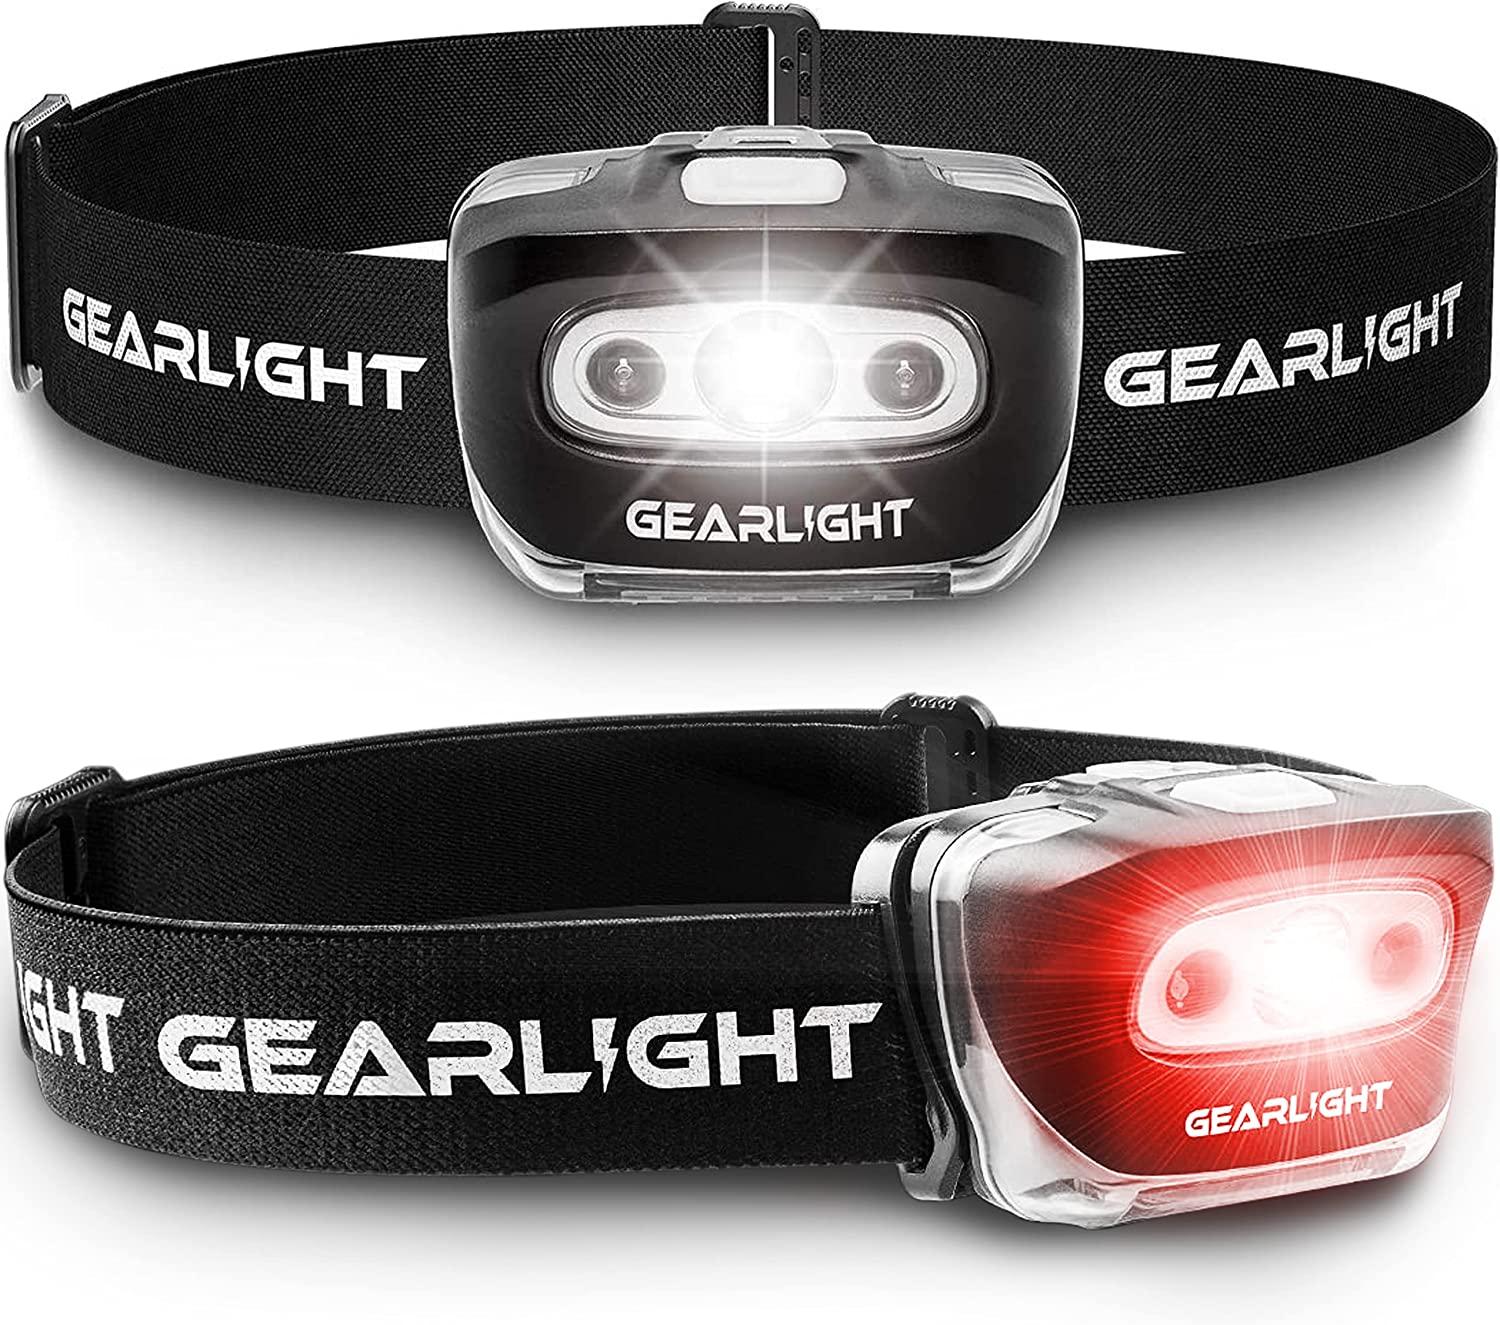 【美國代購】GearLight LED 頭燈 - 一組 2 個戶外手電筒頭燈,附可調式頭帶,適合成人和兒童 - 健行和露營裝備必需品 - S500